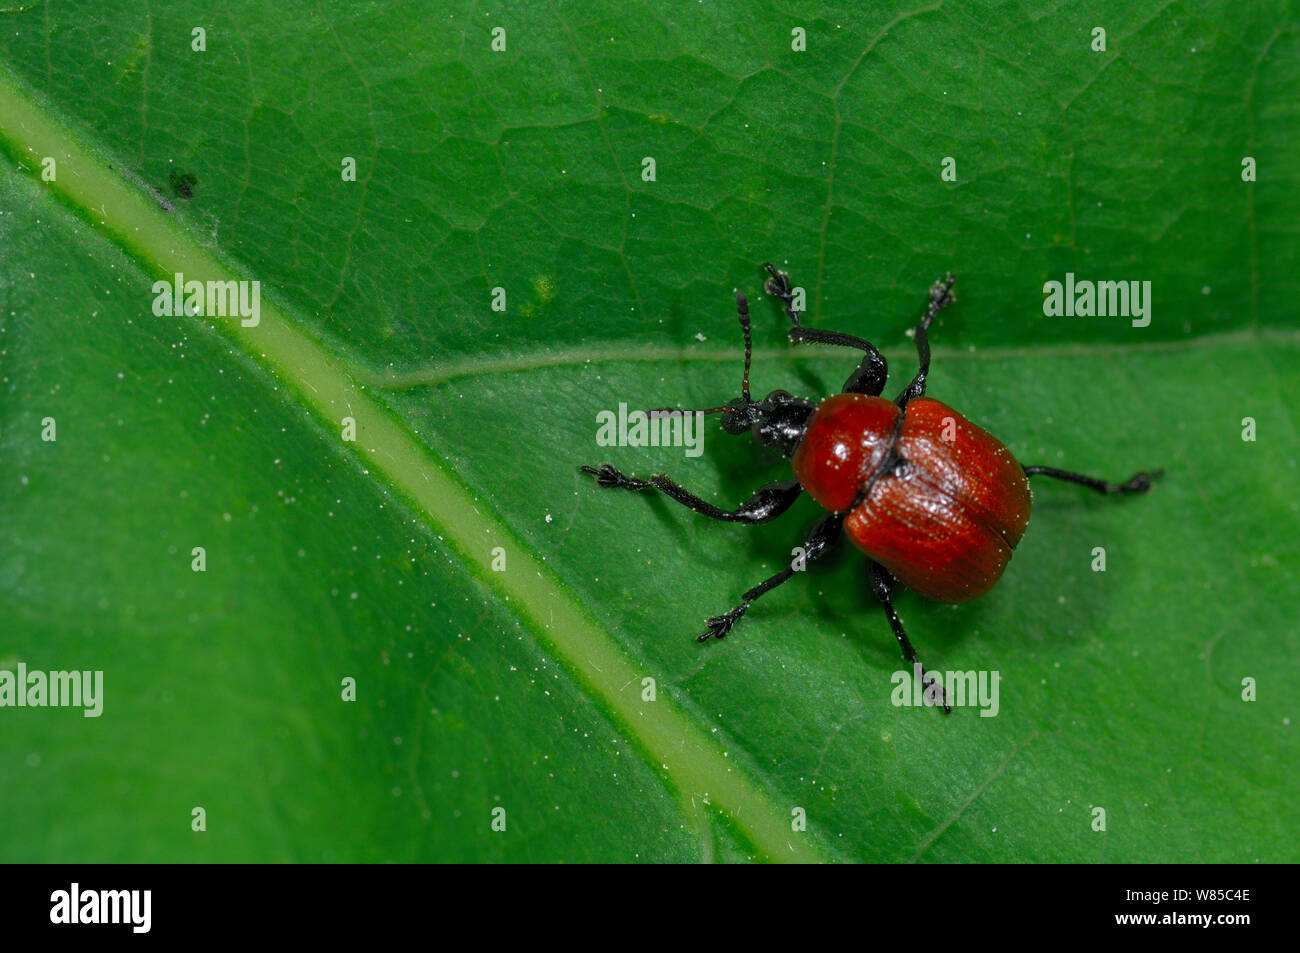 Oak Leaf Roller Beetle (Attelabus nitens) on leaf, Gohrde, Germany Stock Photo